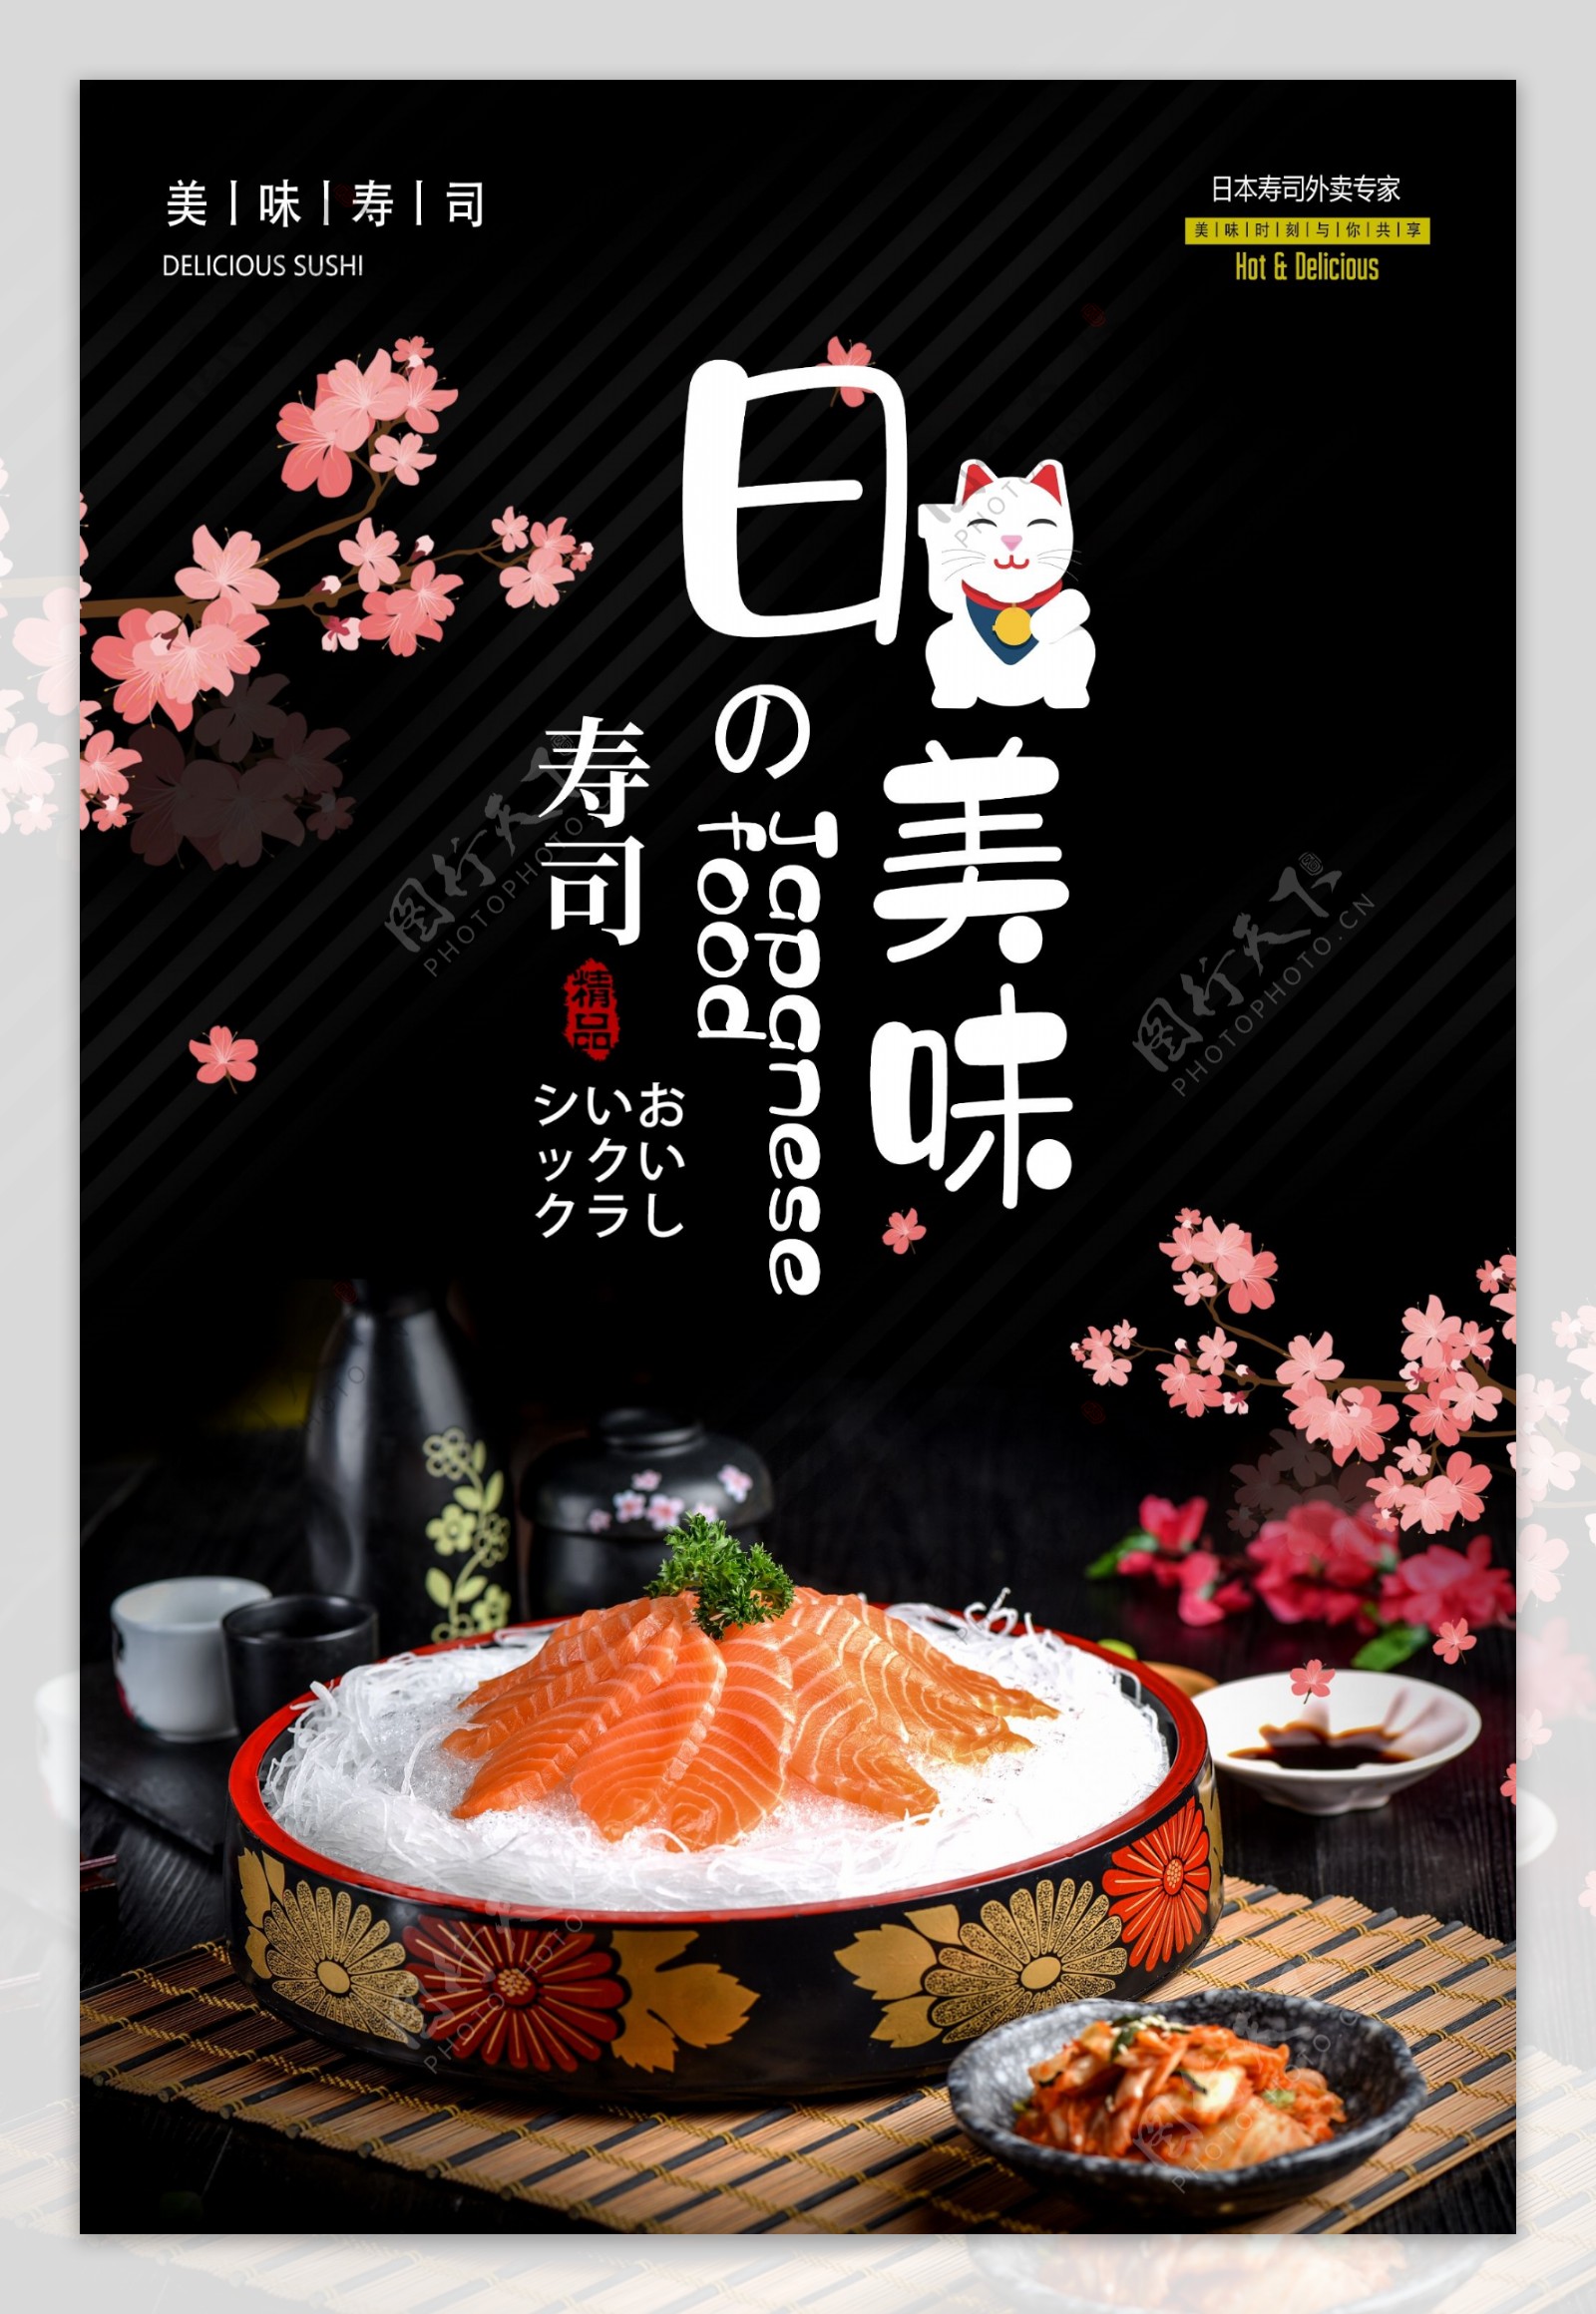 日式美食活动宣传海报素材